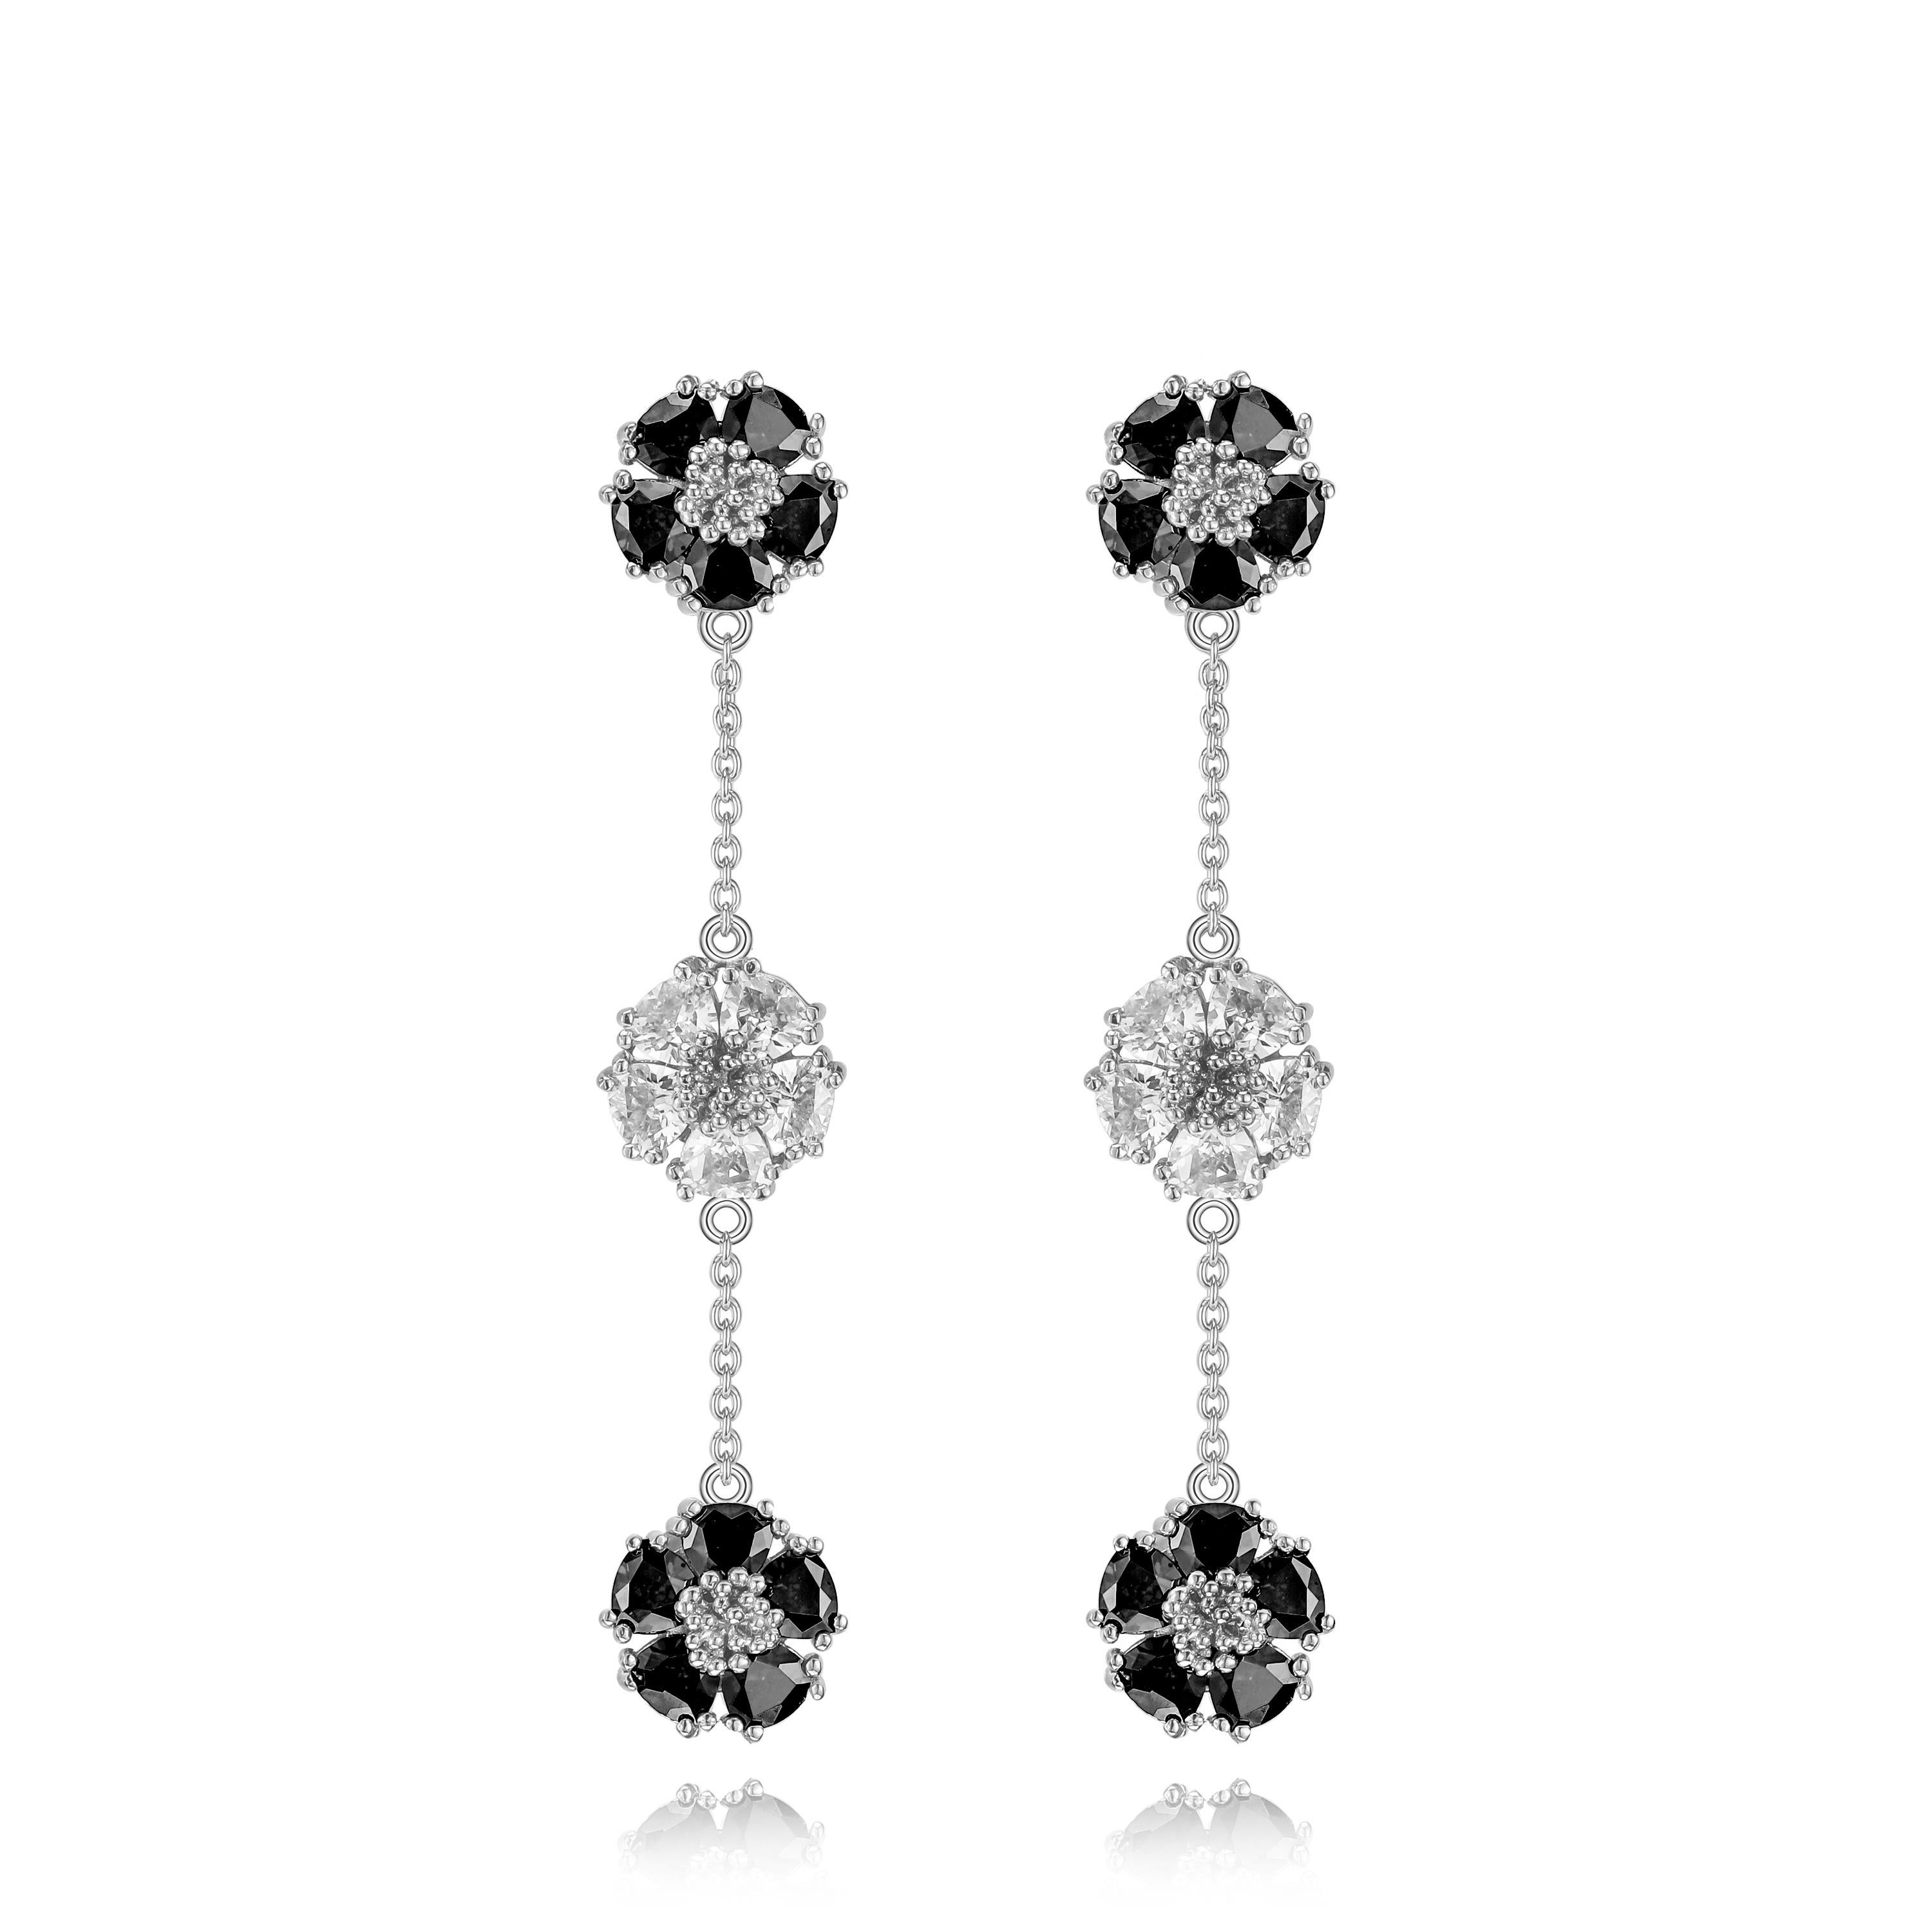 lavender chandelier earrings